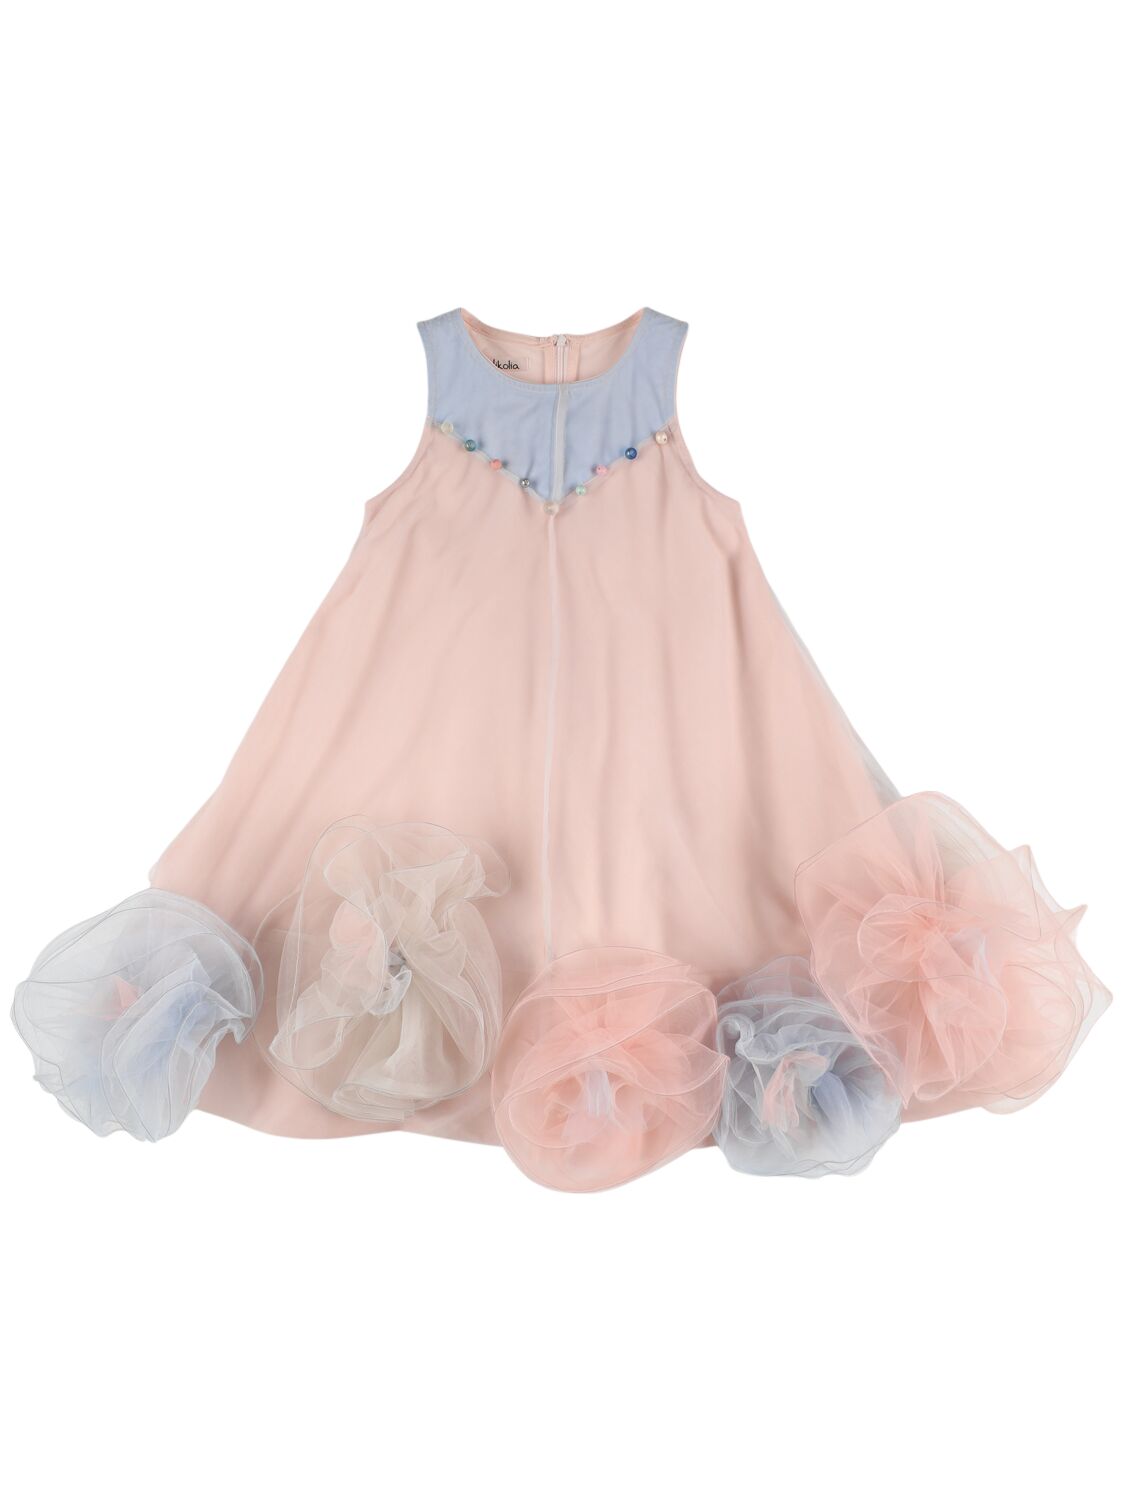 Nikolia Kids' Embellished Tulle Dress W/ Appliqués In Pink,multi